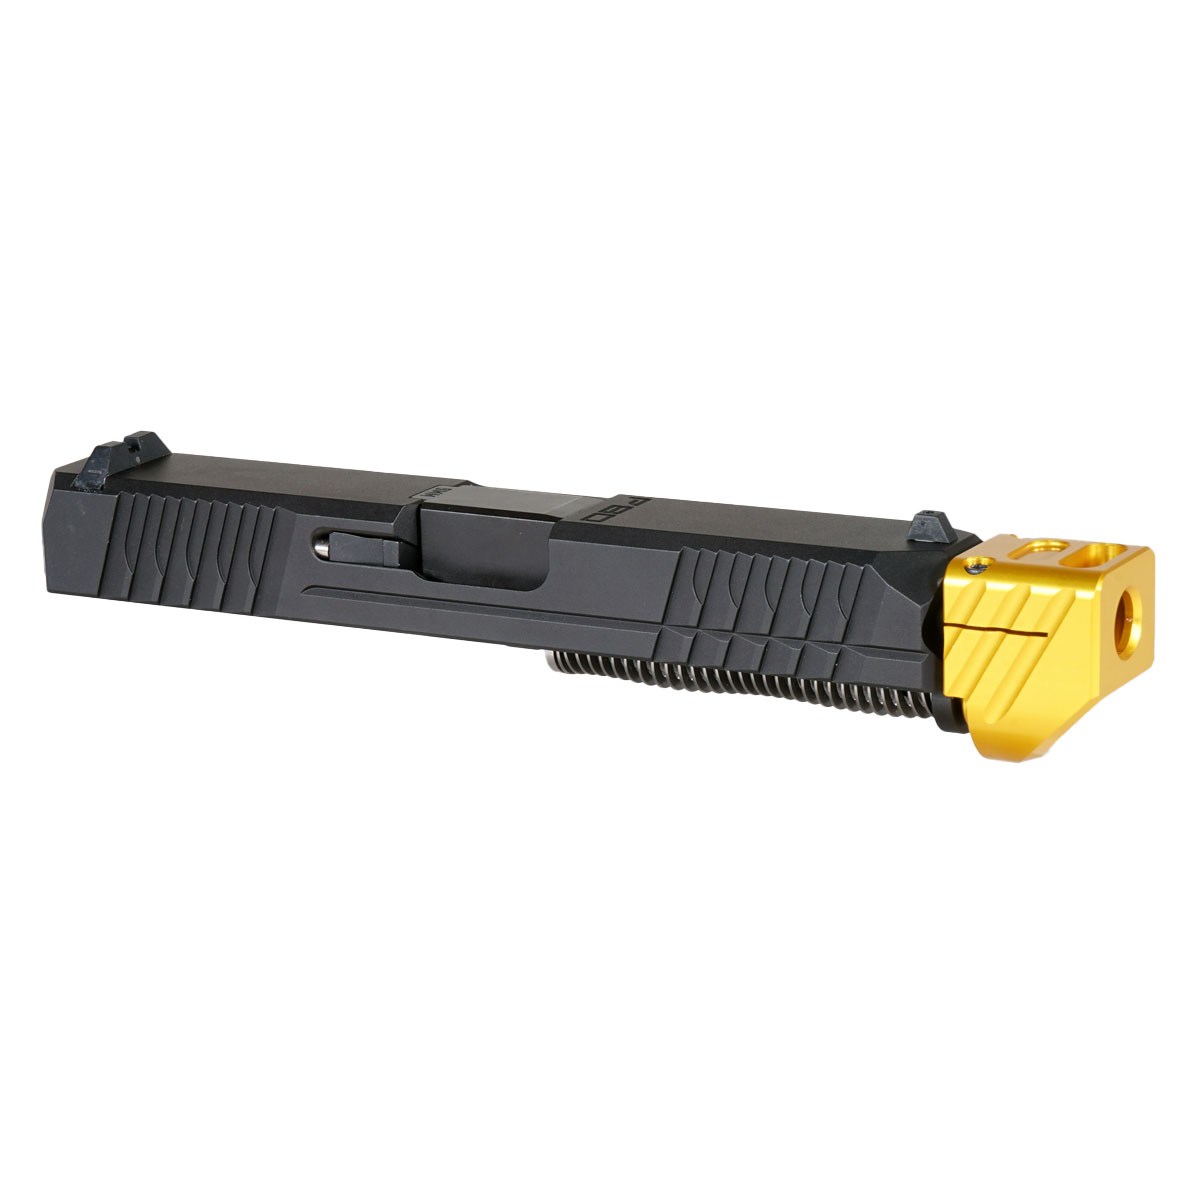 DD 'Paracausal V2 w/ Gold Compensator' 9mm Complete Slide Kit - Glock 19 Gen 1-3 Compatible